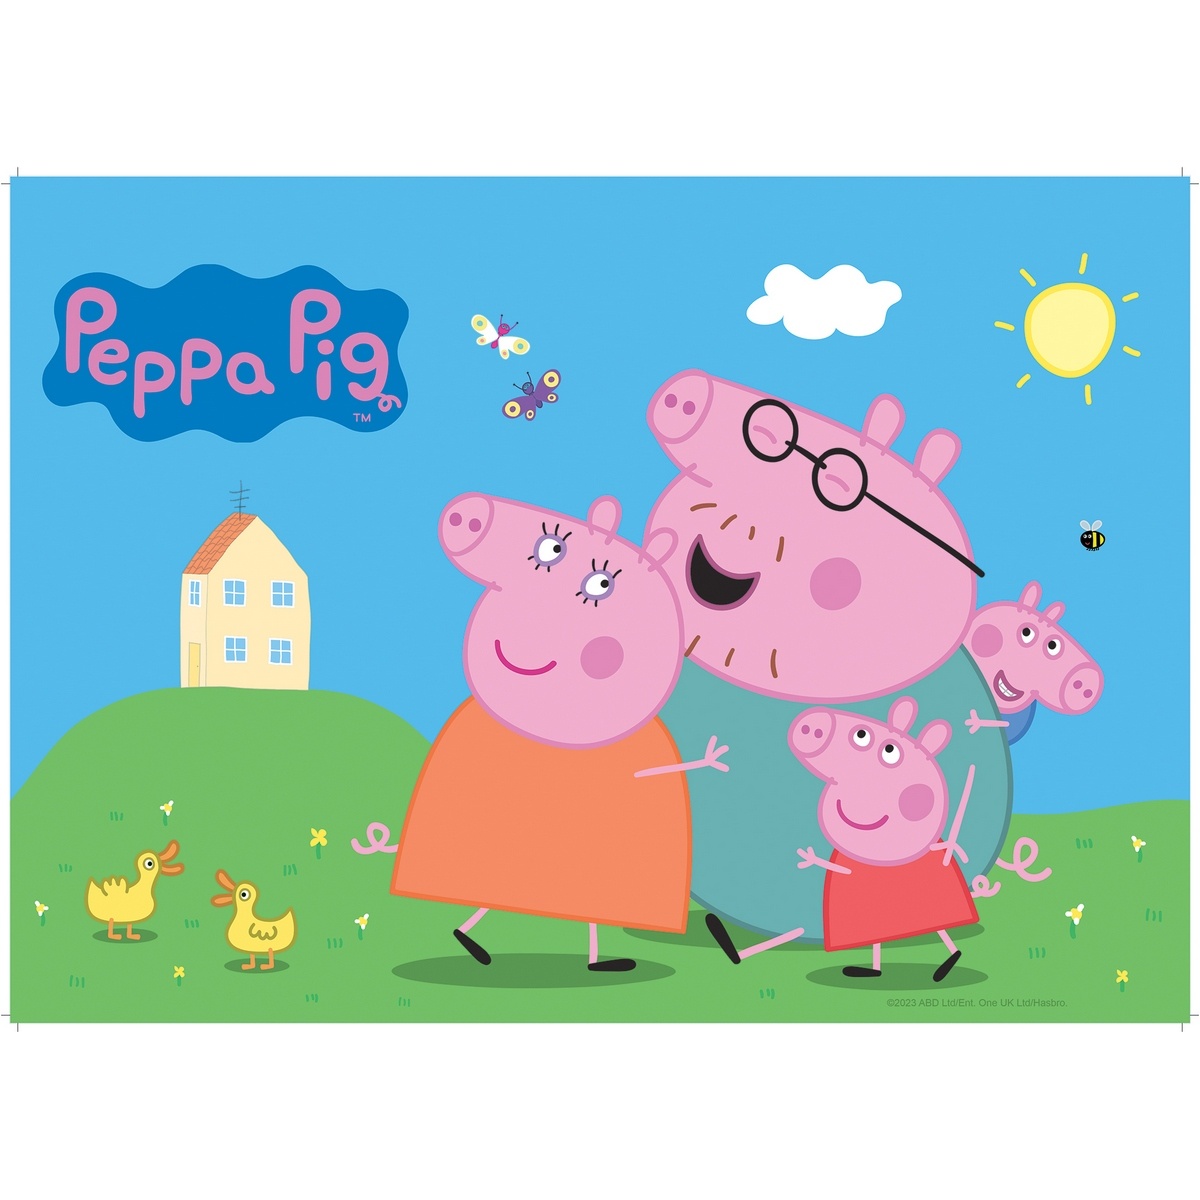 Detské prestieranie Peppa Pig, 42 x 30 cm